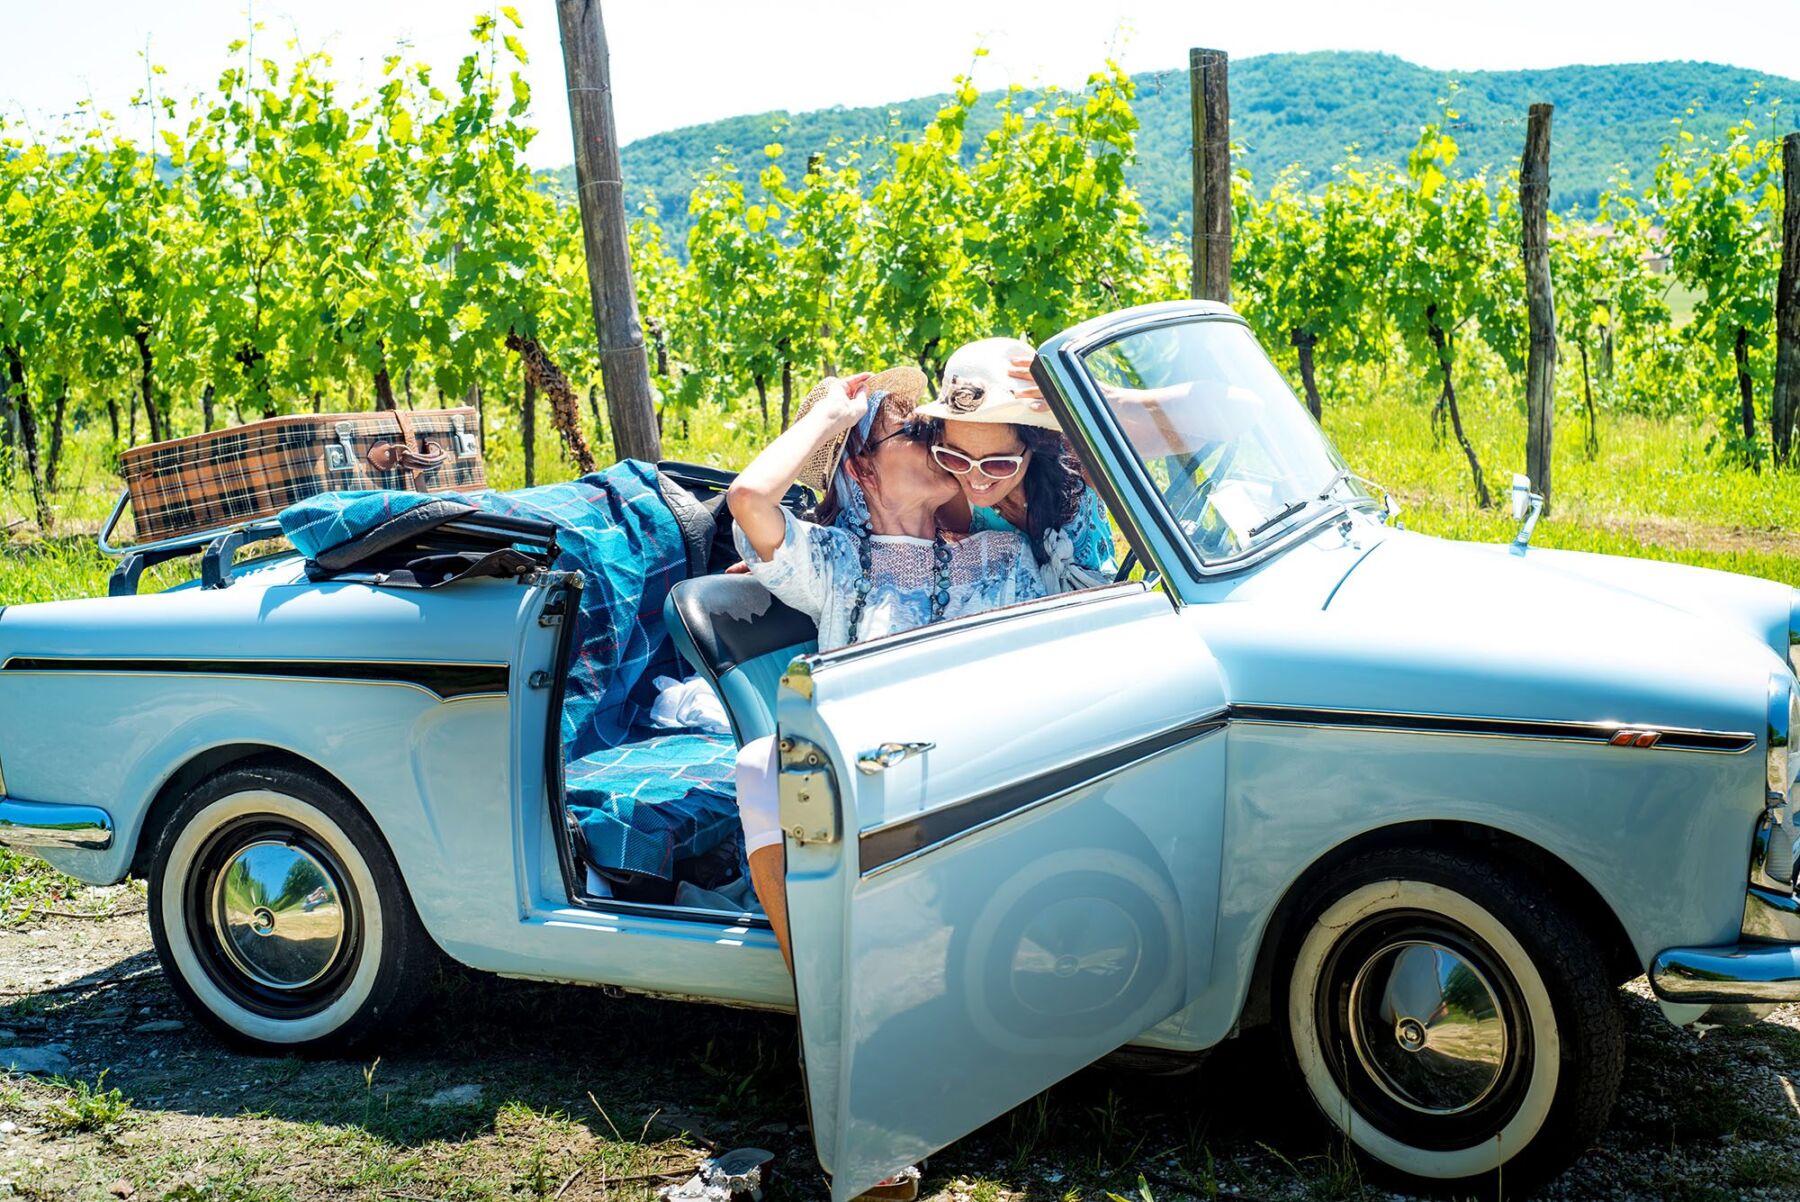 Buy Our Honeymoon LMD BOH Vineyard Car